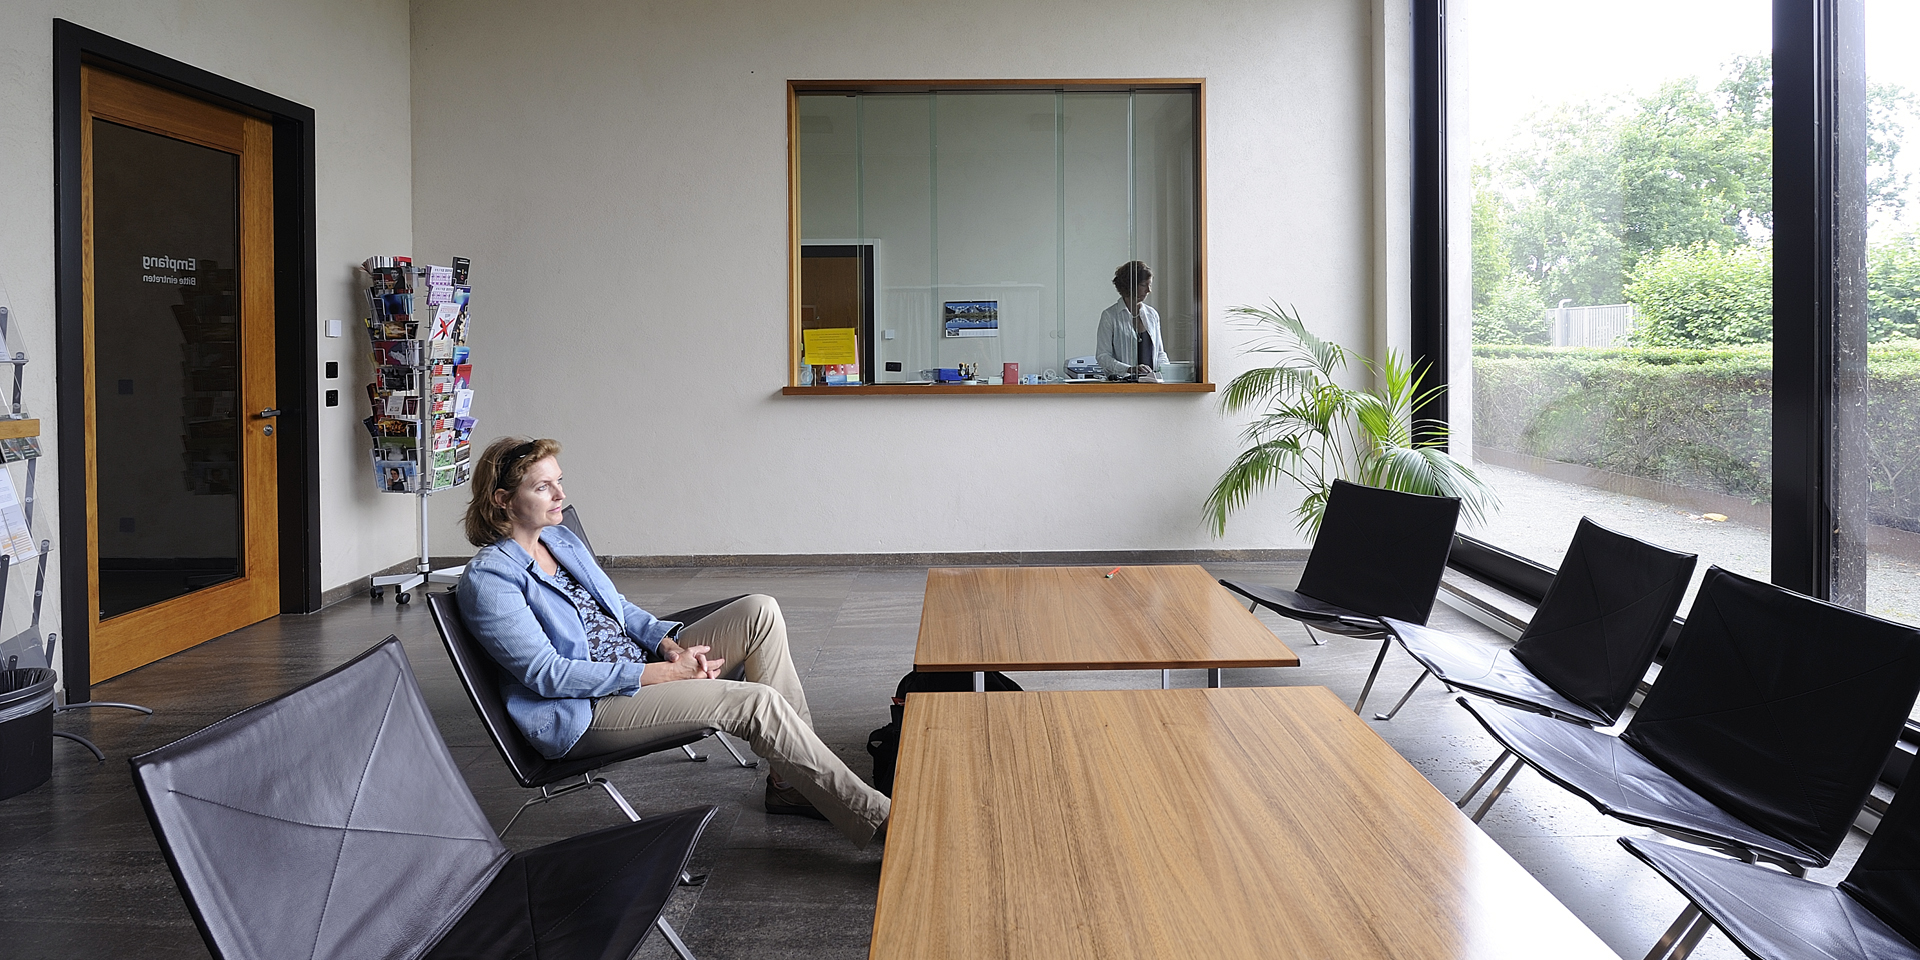 Sala d’aspetto del consolato svizzero a Berlino. Una donna seduta aspetta il suo turno, mentre un membro del personale del consolato lavora dietro al desk.